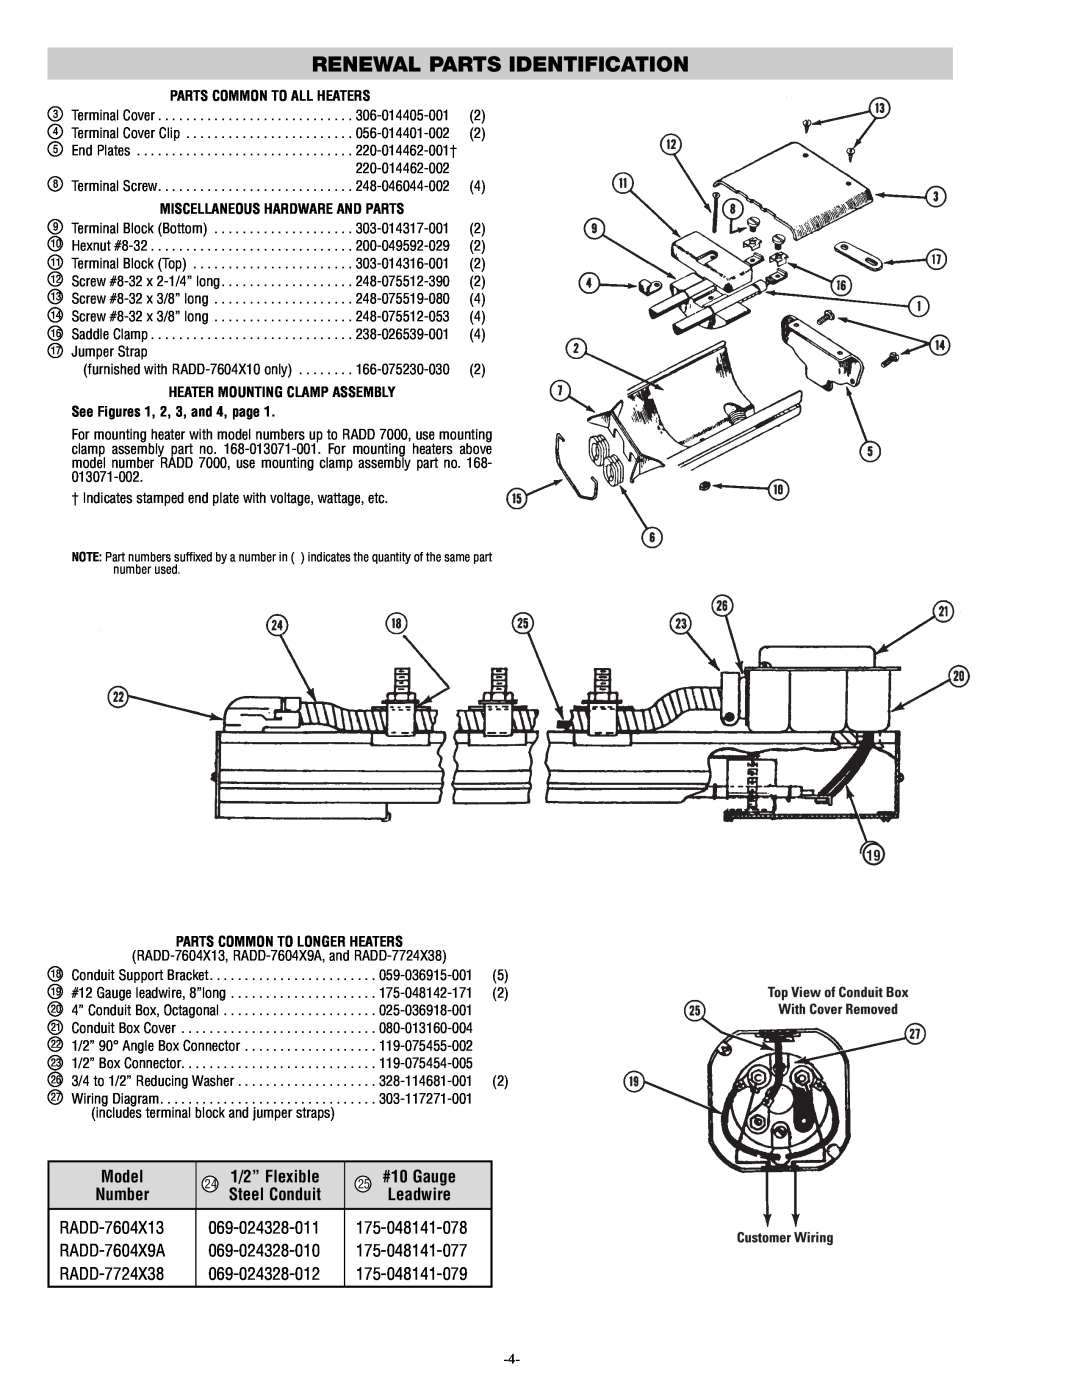 Chromalox PG412-10 Renewal Parts Identification, Model, 24 1/2” Flexible, 25 #10 Gauge, Steel Conduit, Leadwire 